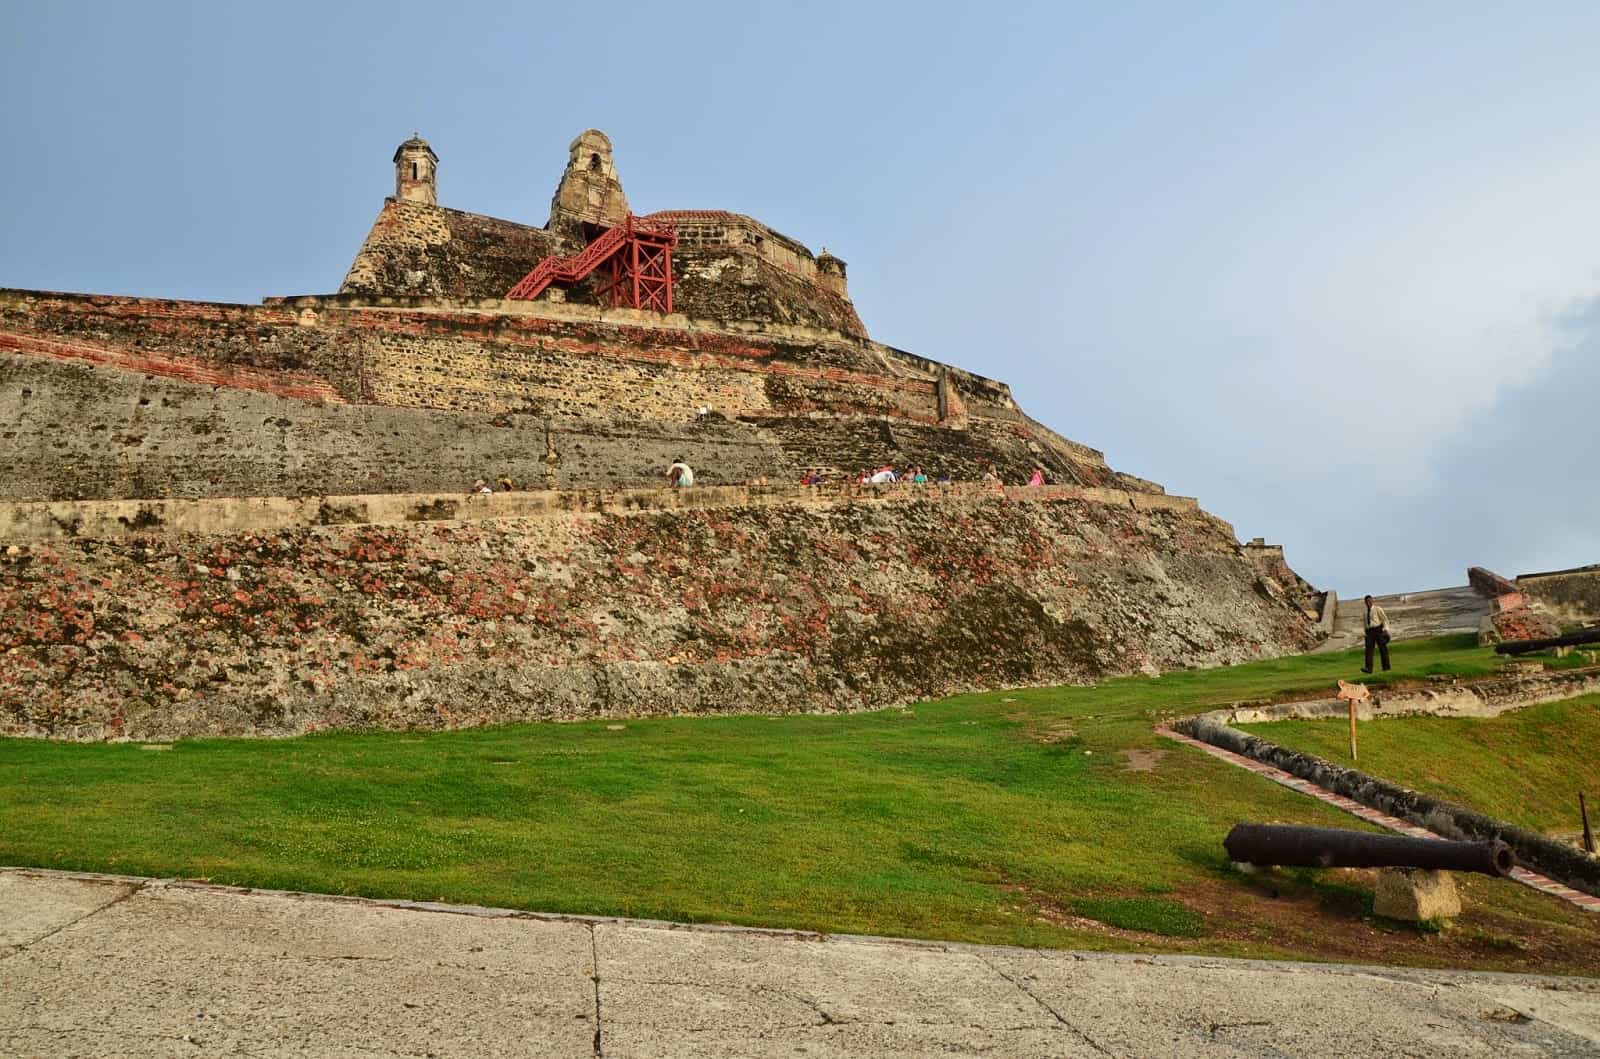 Castillo San Felipe de Barajas in Cartagena, Bolívar, Colombia